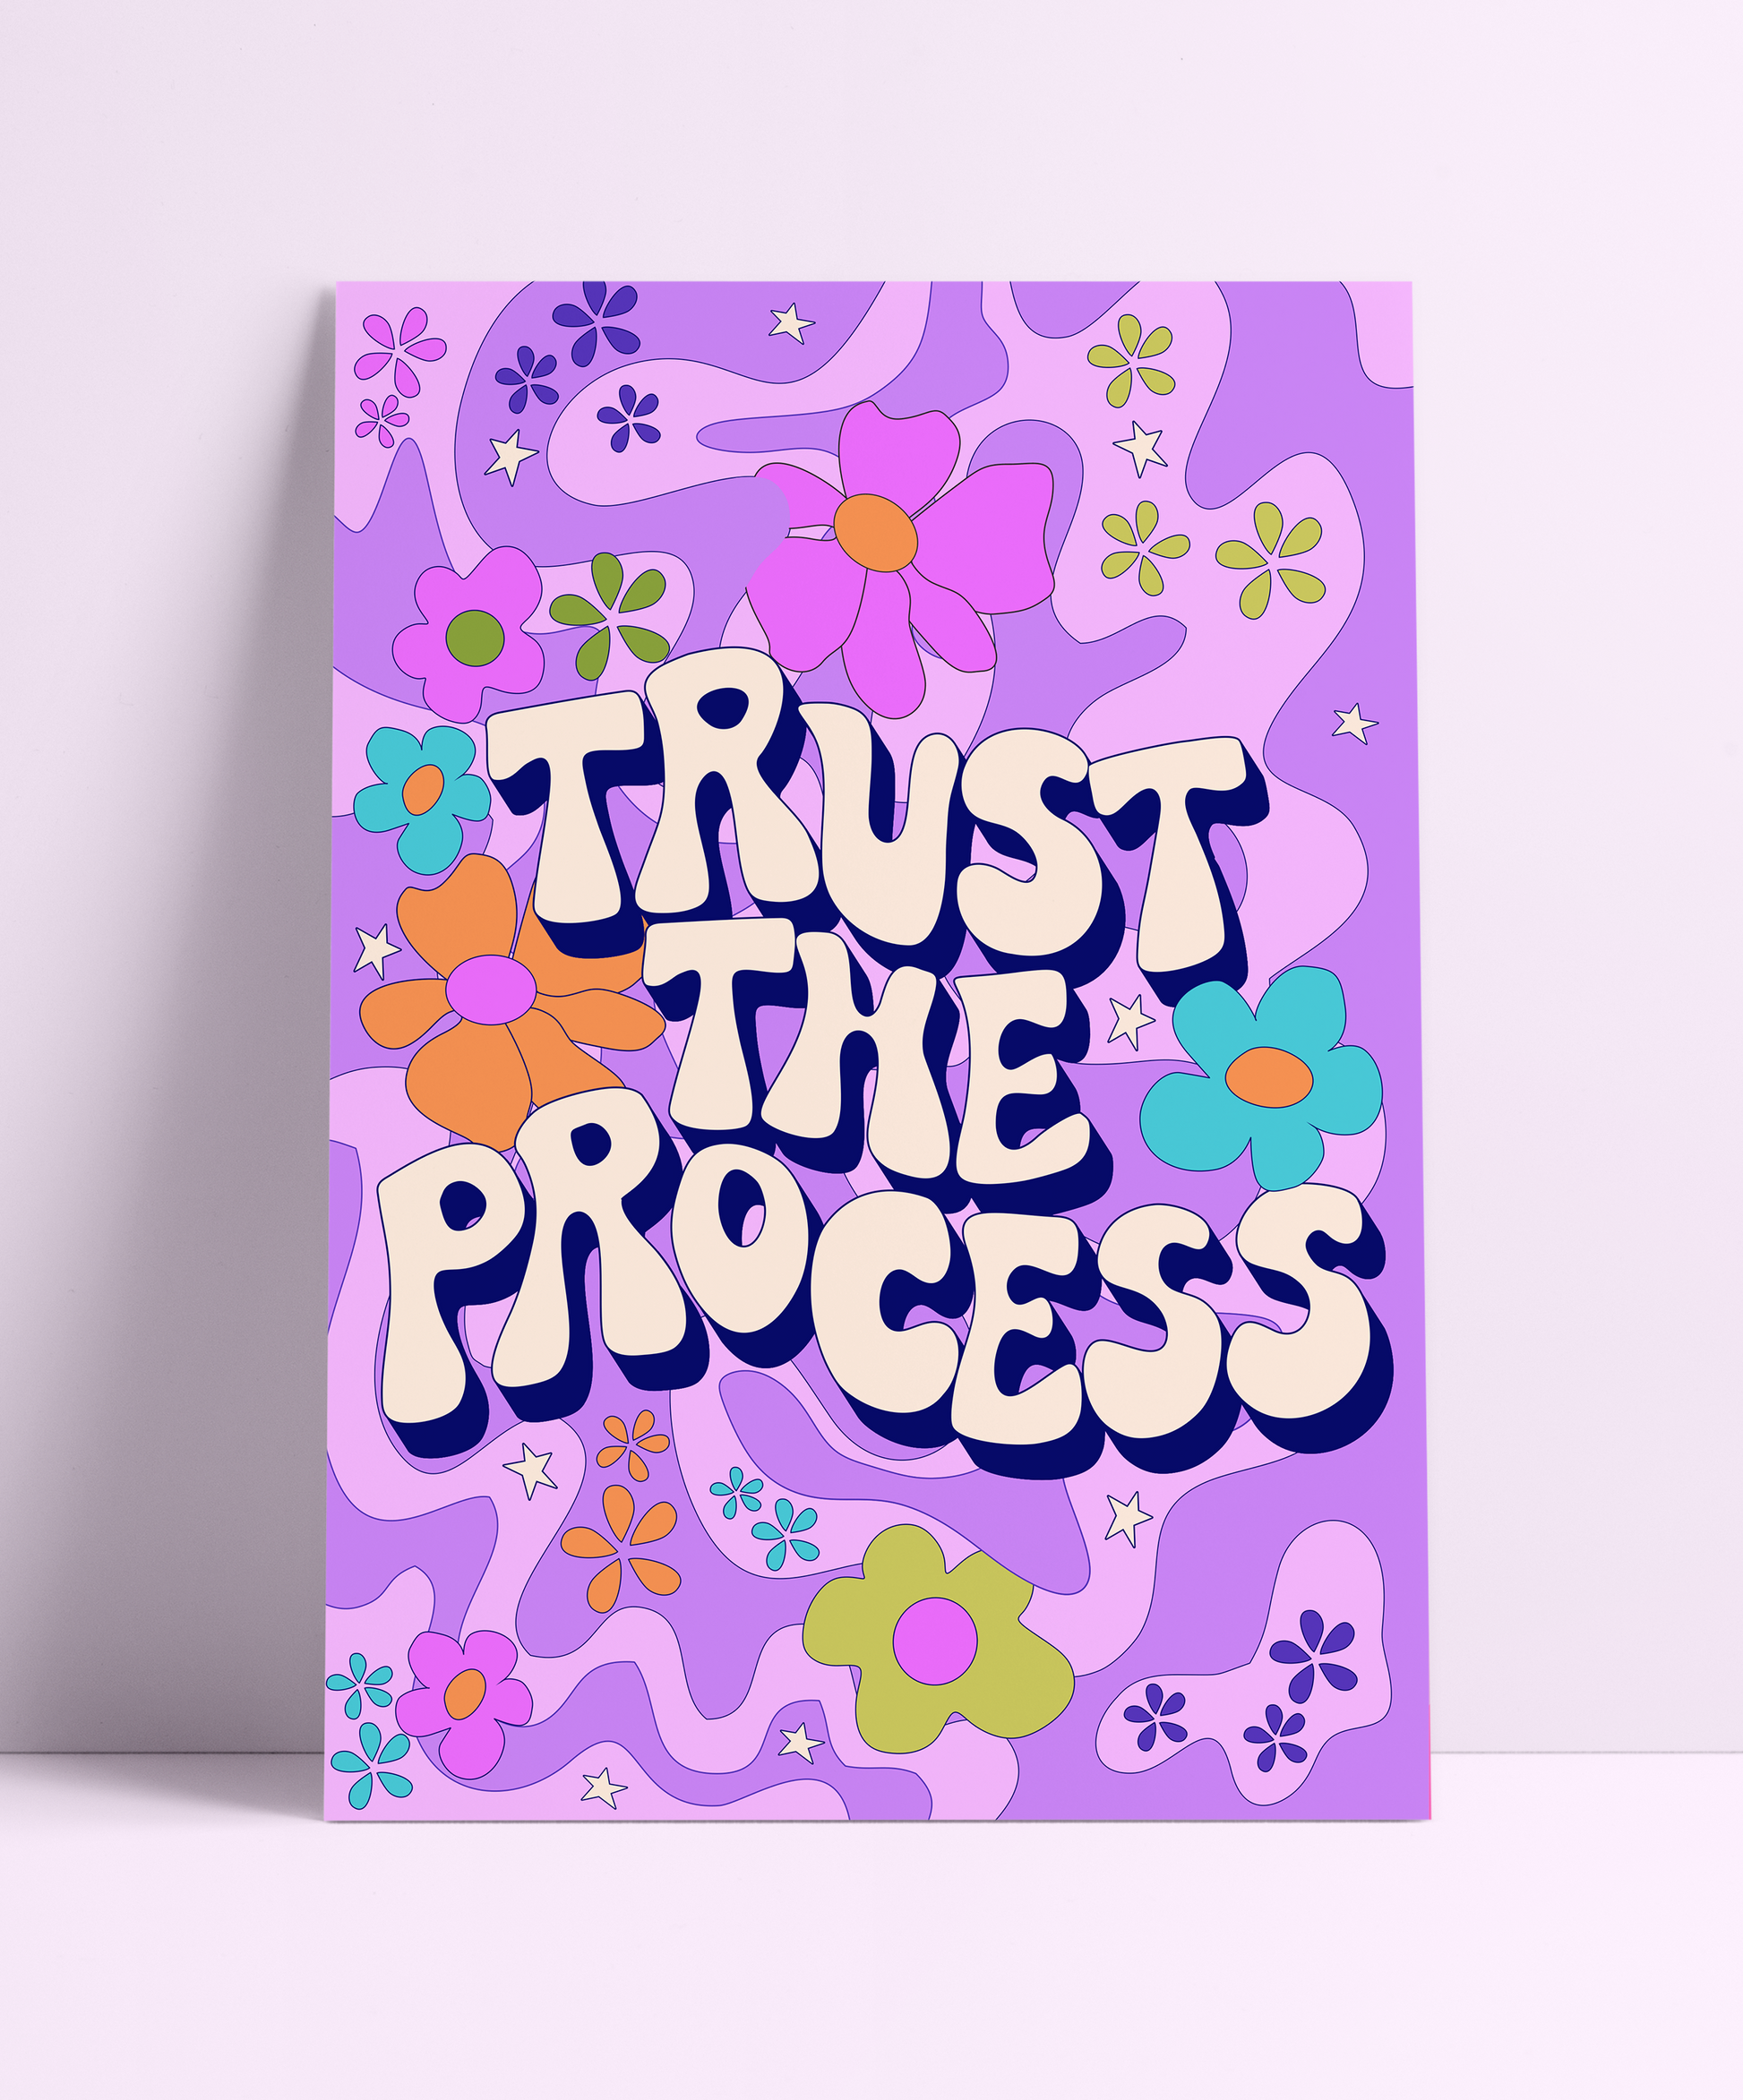 Trust The Process Wall Print - PrintedWeird